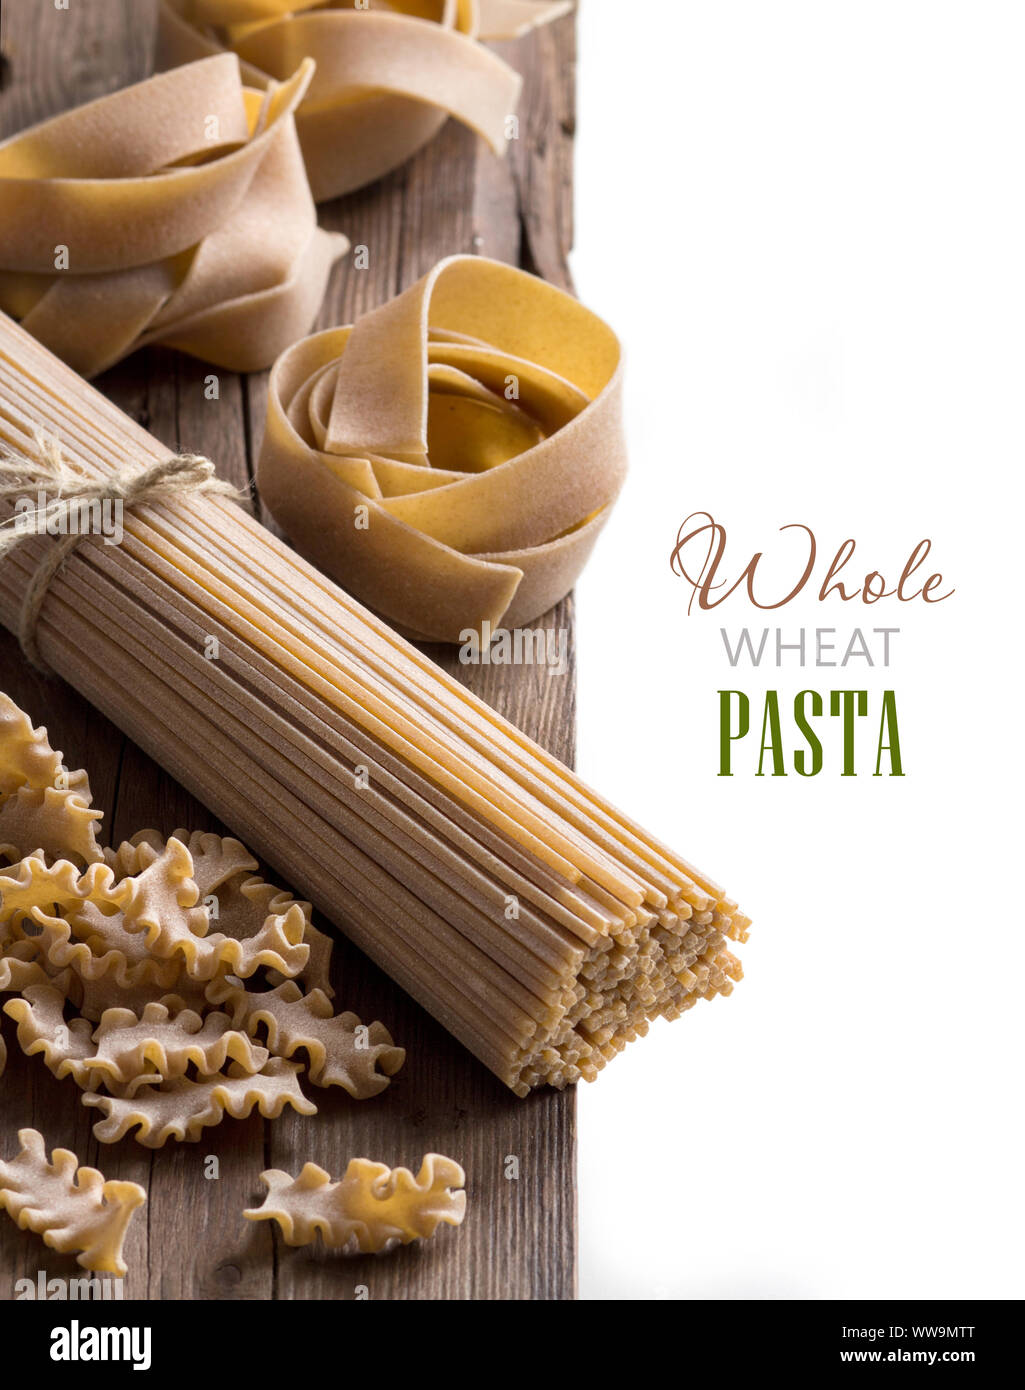 Vollkornbrot italienische Pasta - Spaghetti, mafalde und Pappardelle Stockfoto